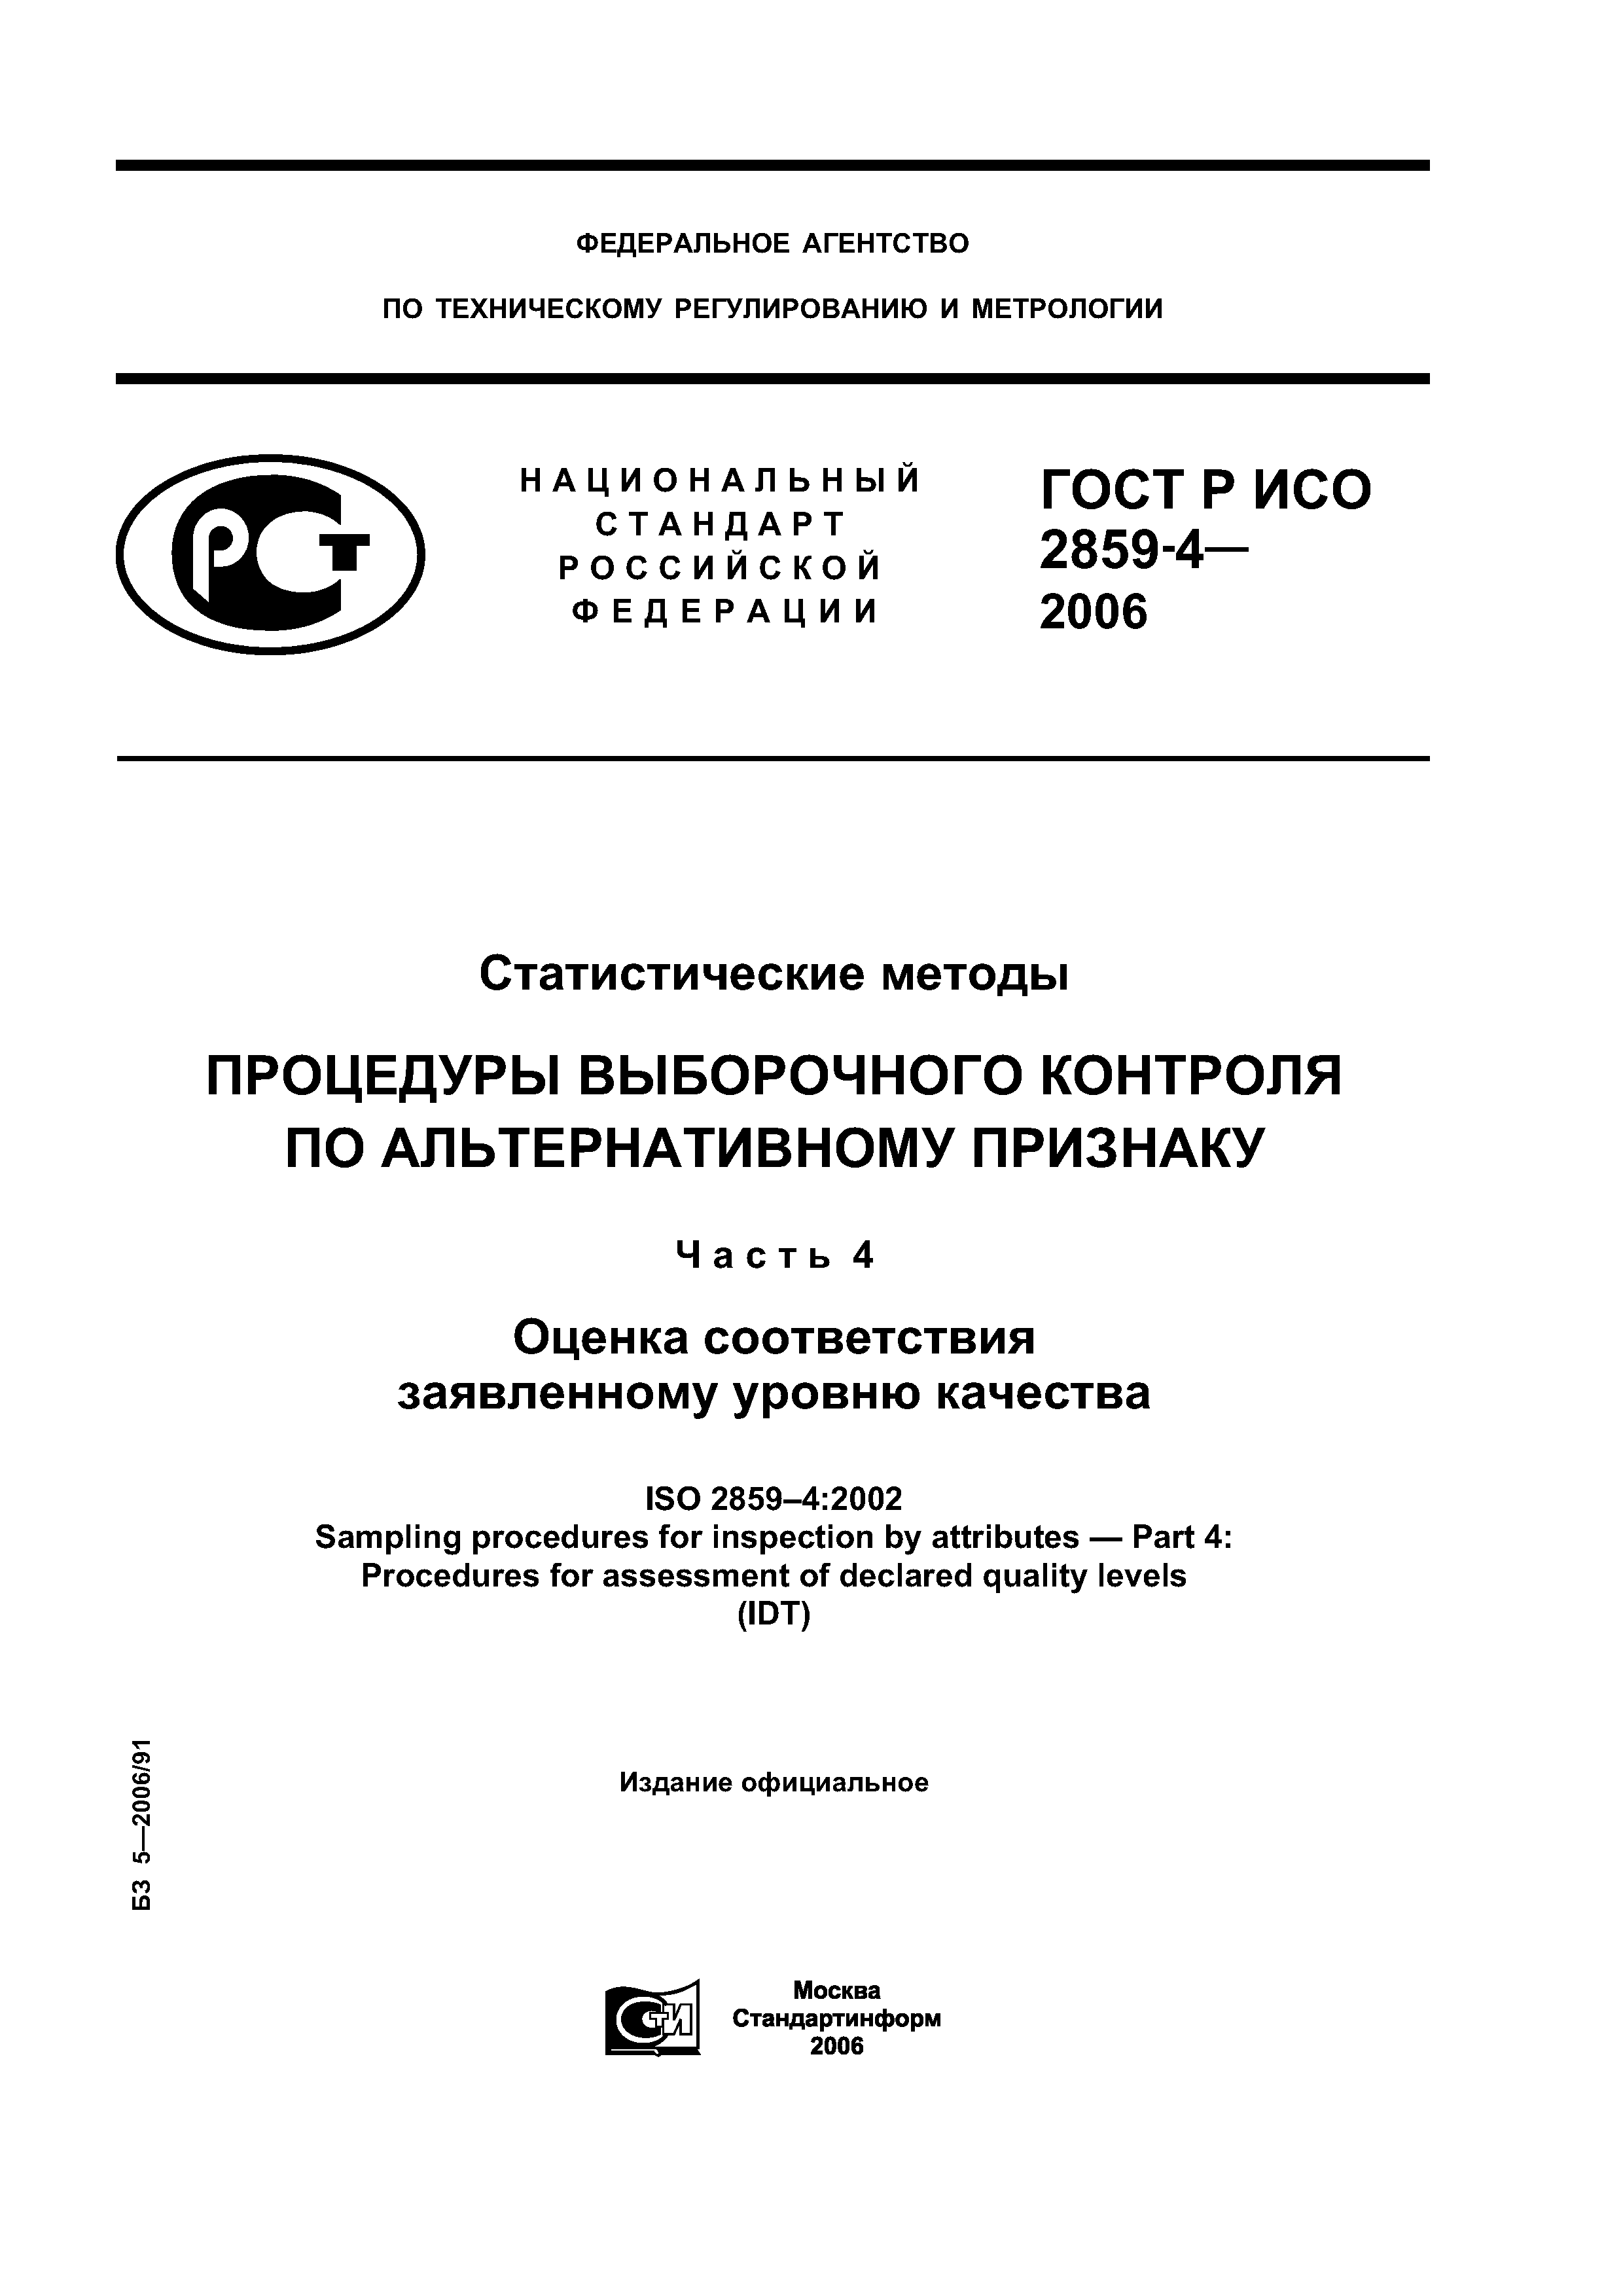 ГОСТ Р ИСО 2859-4-2006